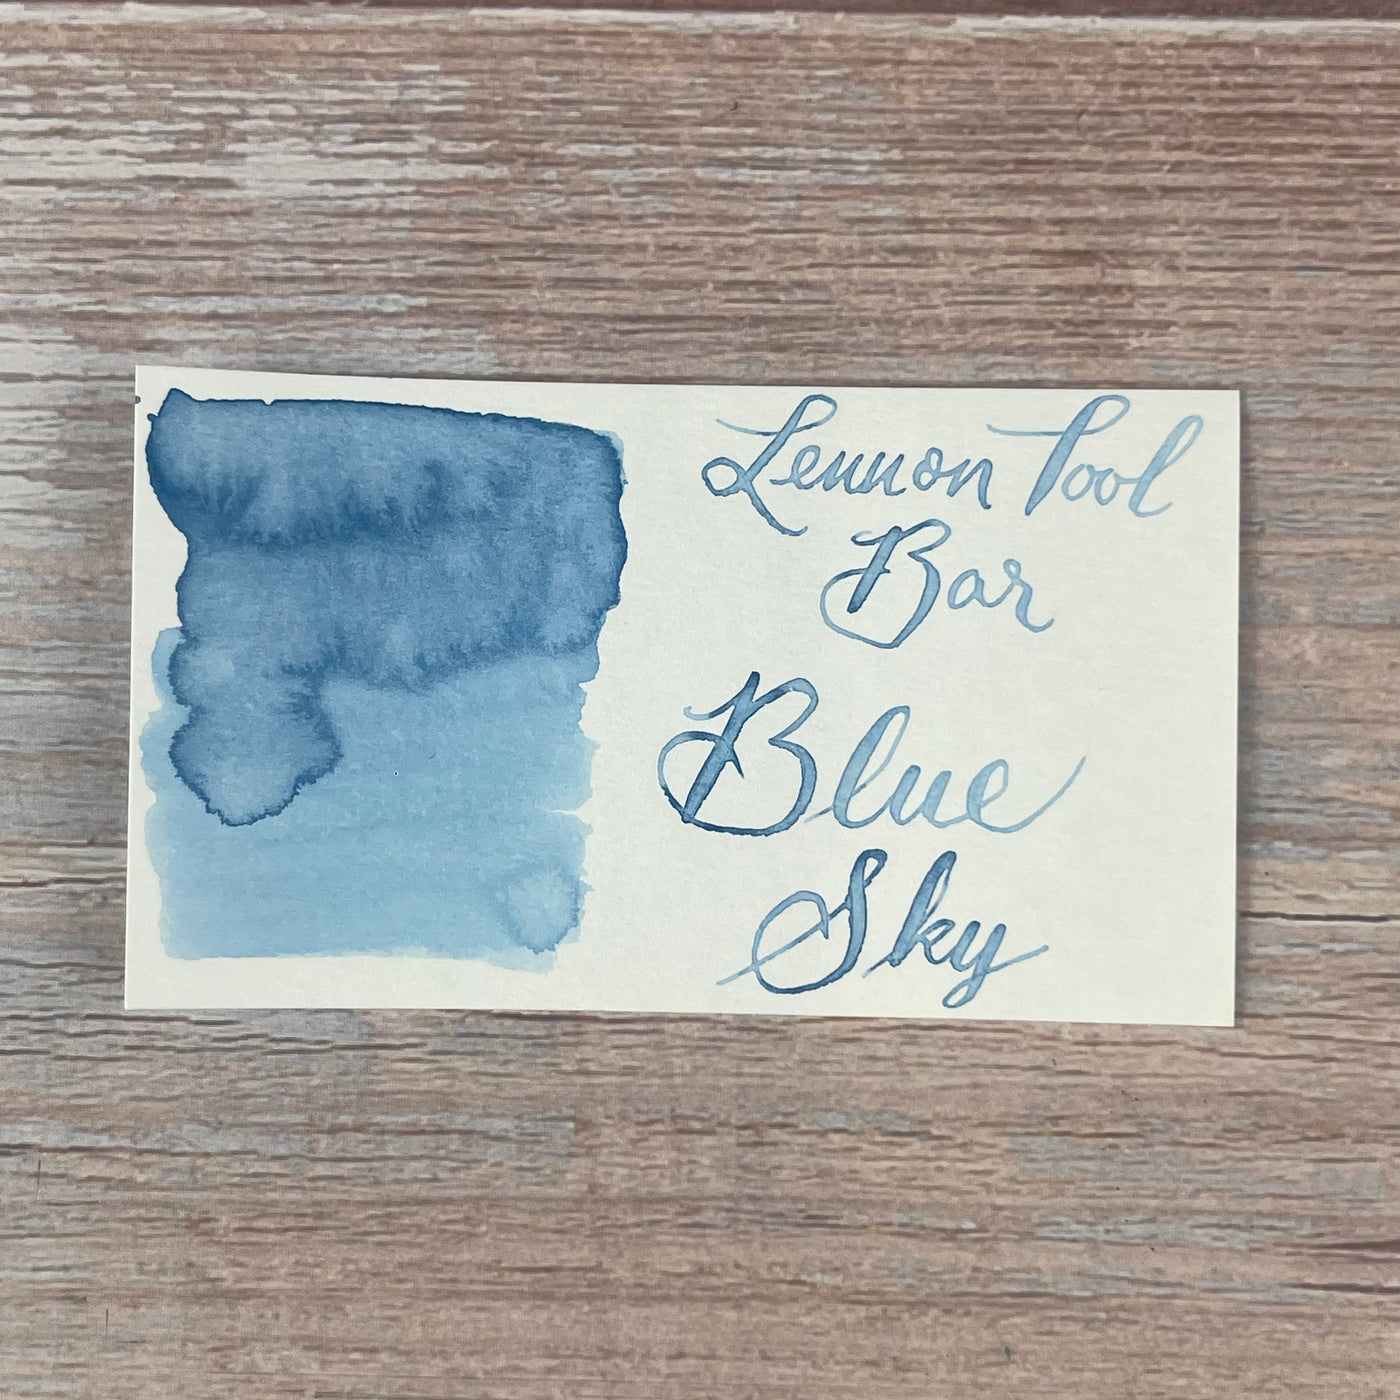 Lennon Tool Bar Blue Sky - 30ml Bottled Ink